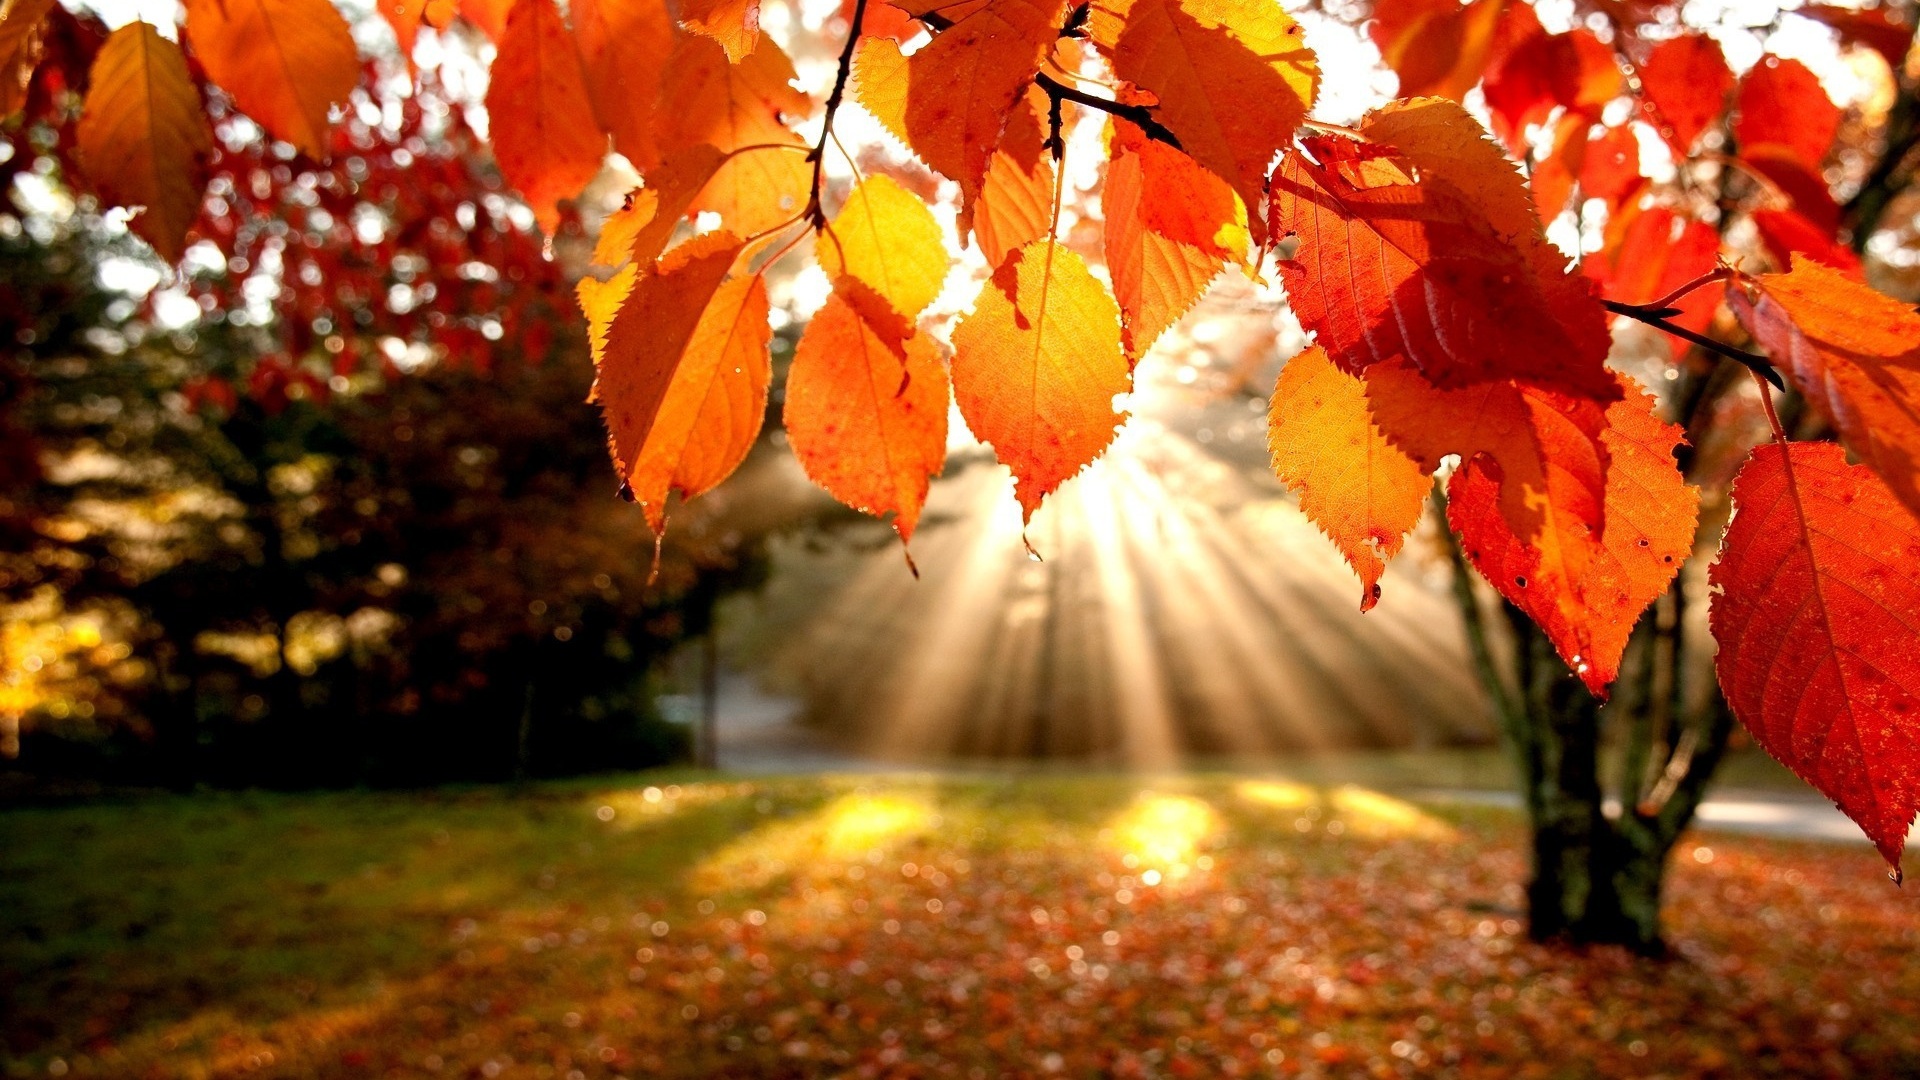 Widescreen Autumn Leaves Wallpaper